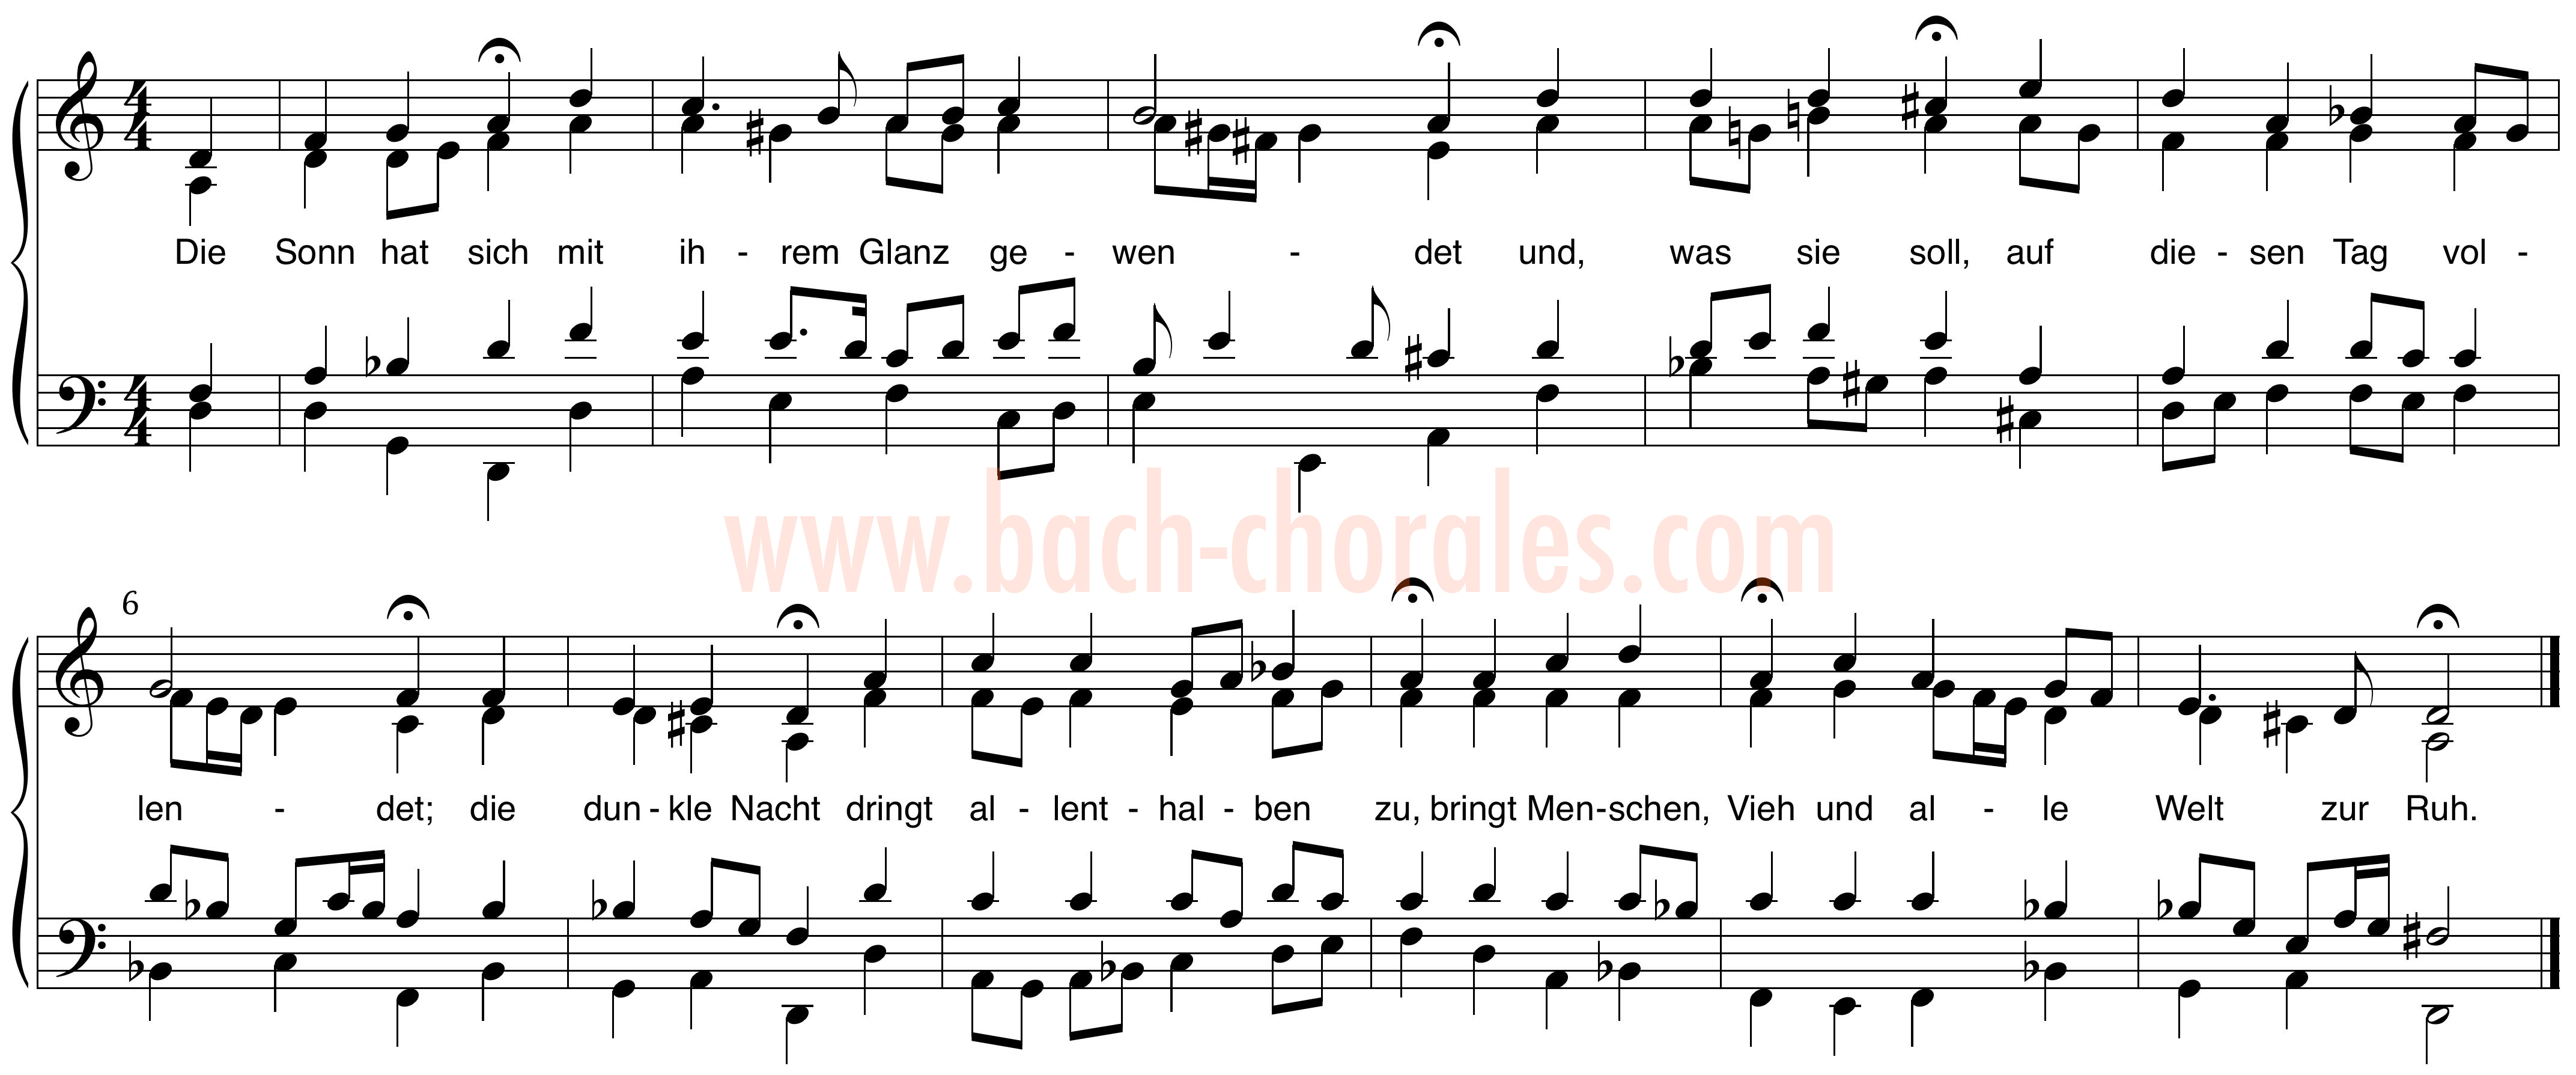 notenbeeld BWV 297 op https://www.bach-chorales.com/